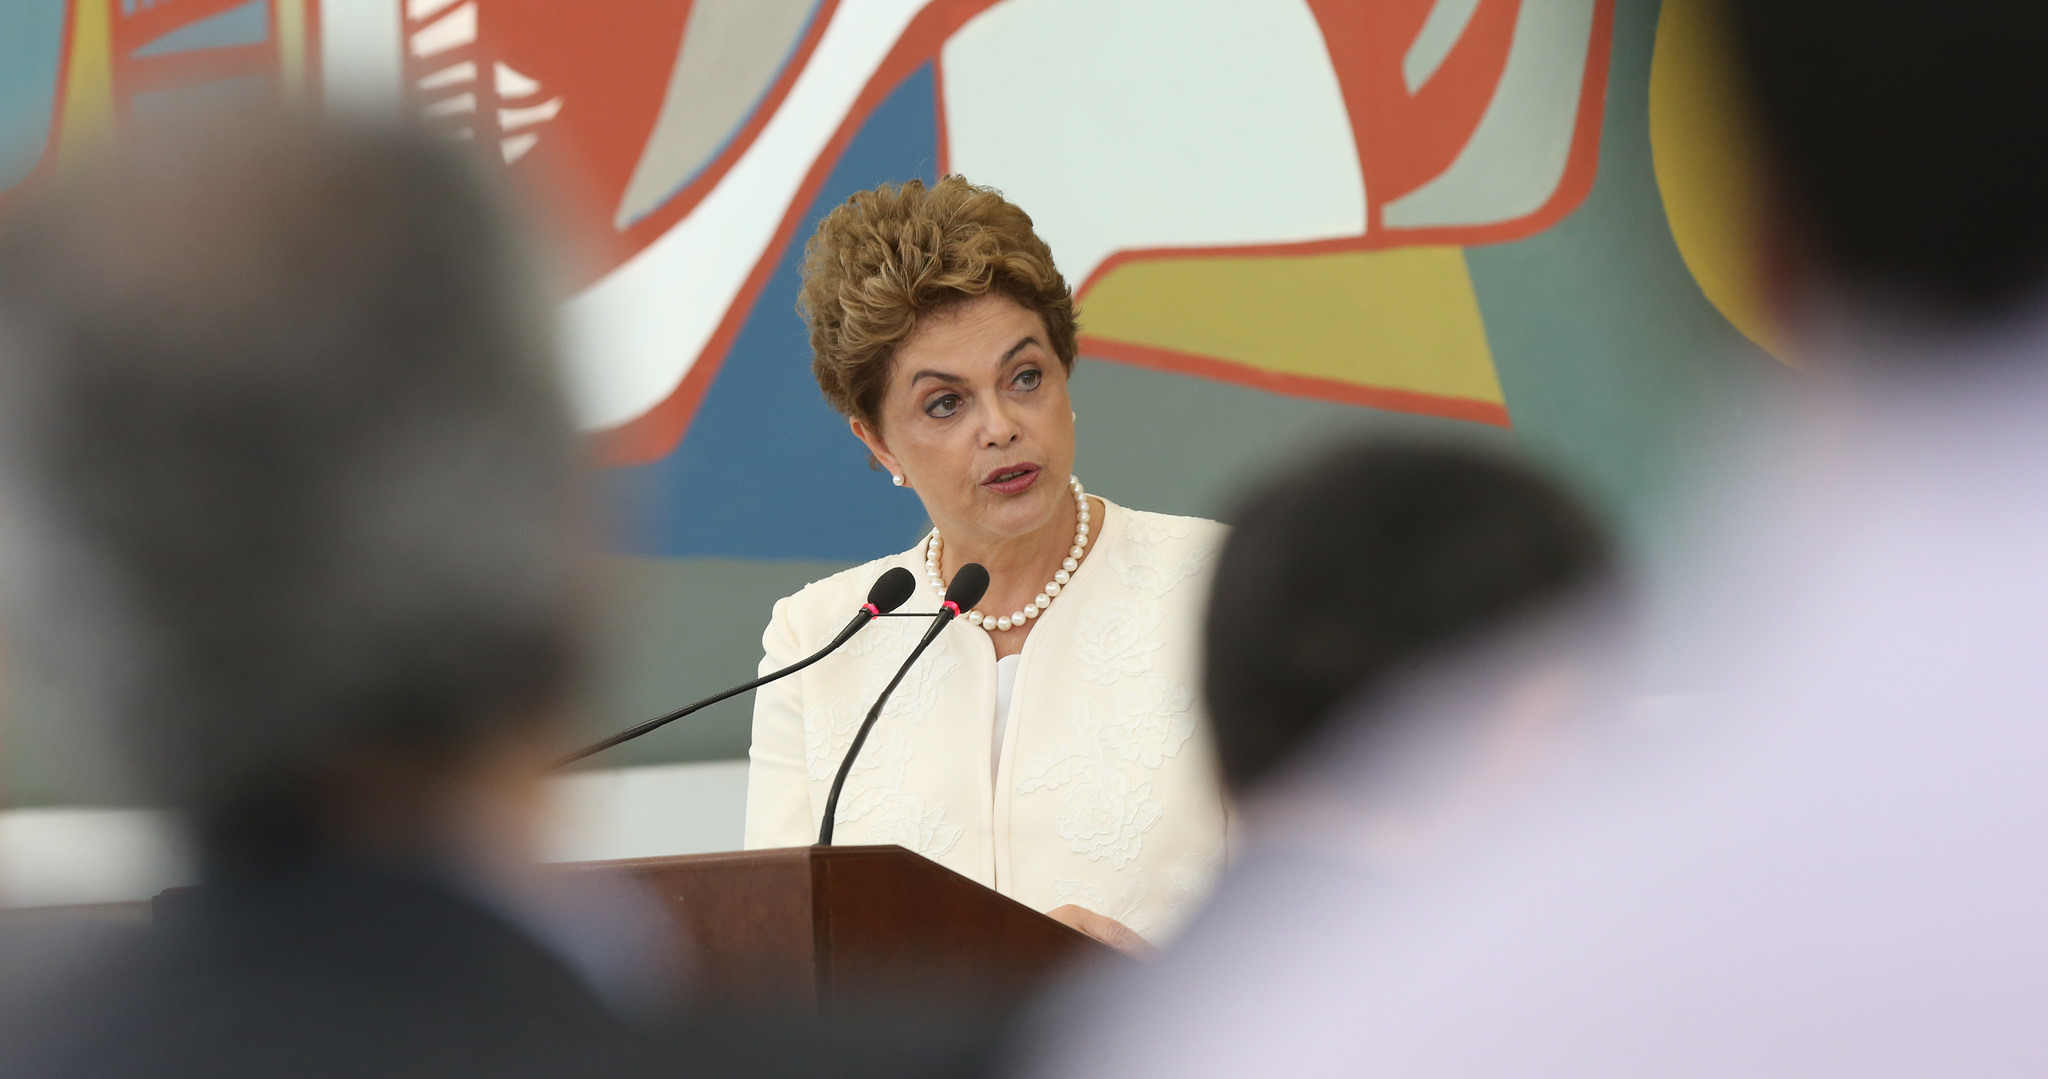 Ao vivo: Conferência de Dilma Rousseff